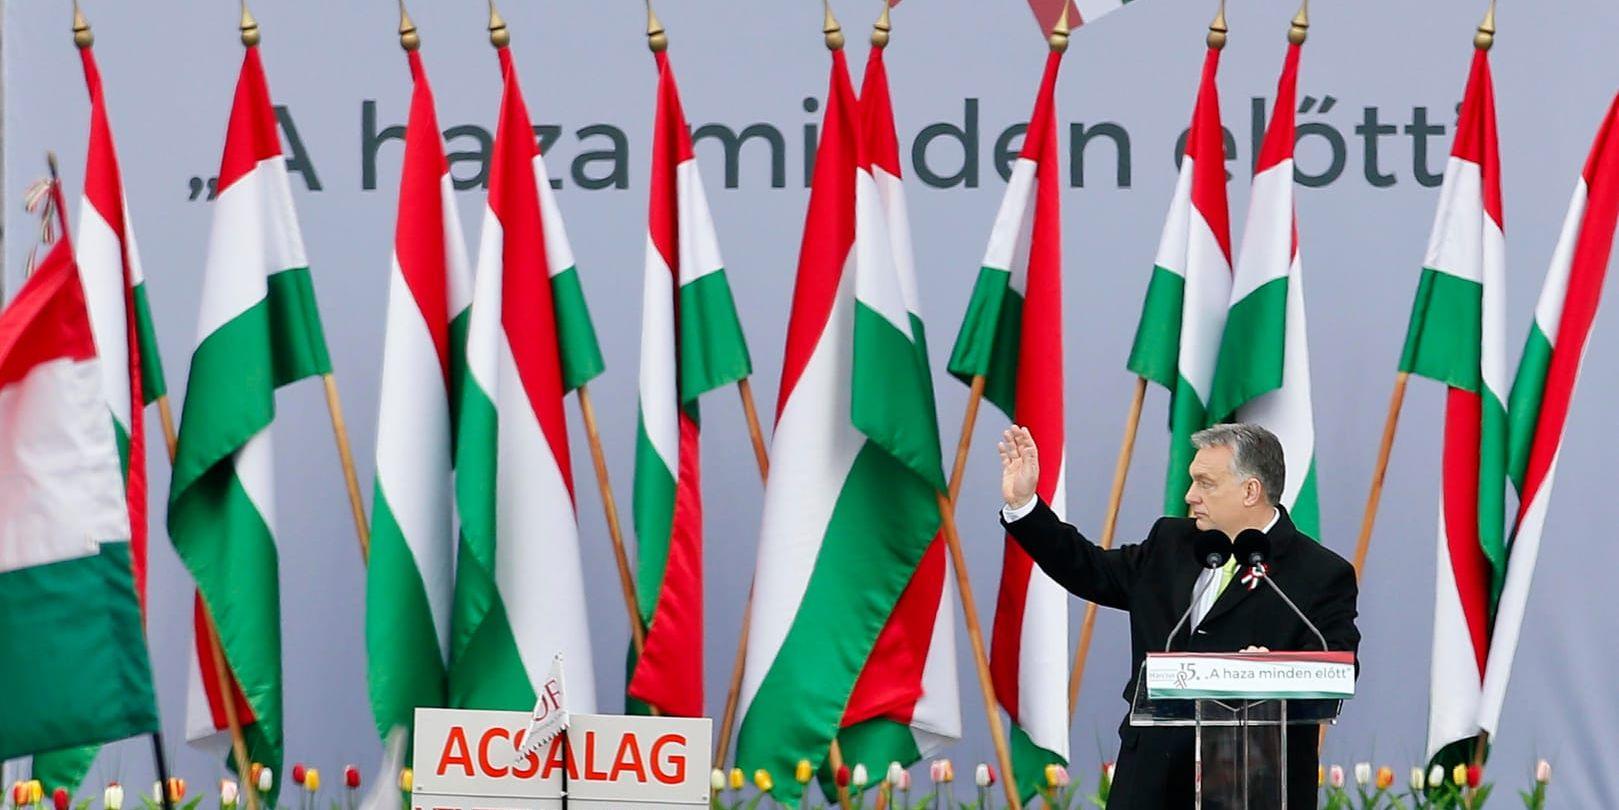 Ungerns premiärminister Viktor Orbán väntas sitta kvar på sin post.